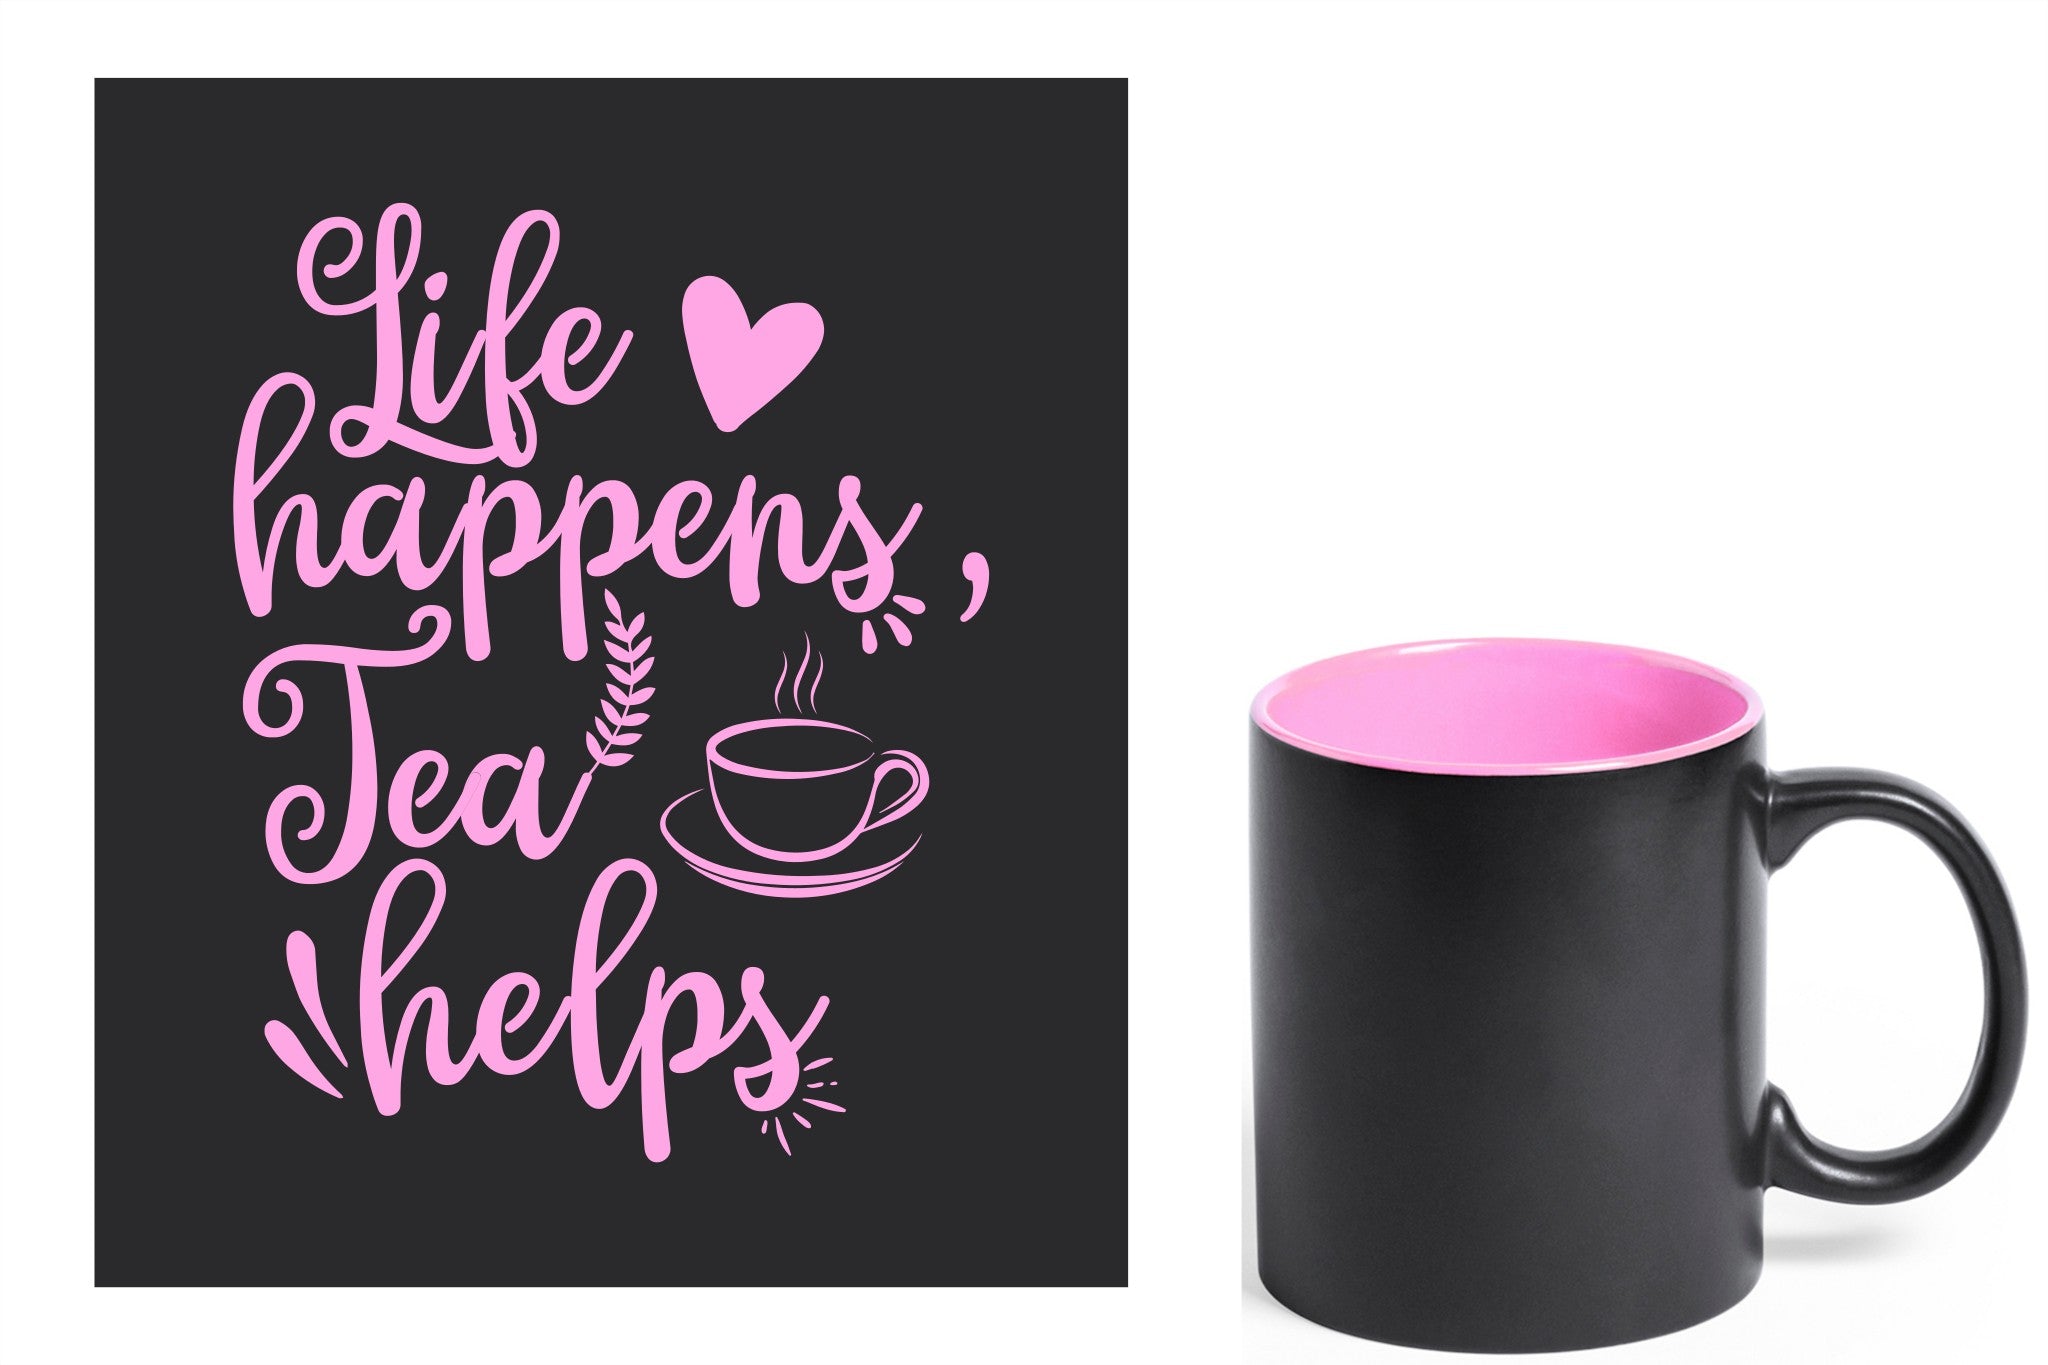 zwarte keramische mok met roze gravure  'Life happens tea helps'.